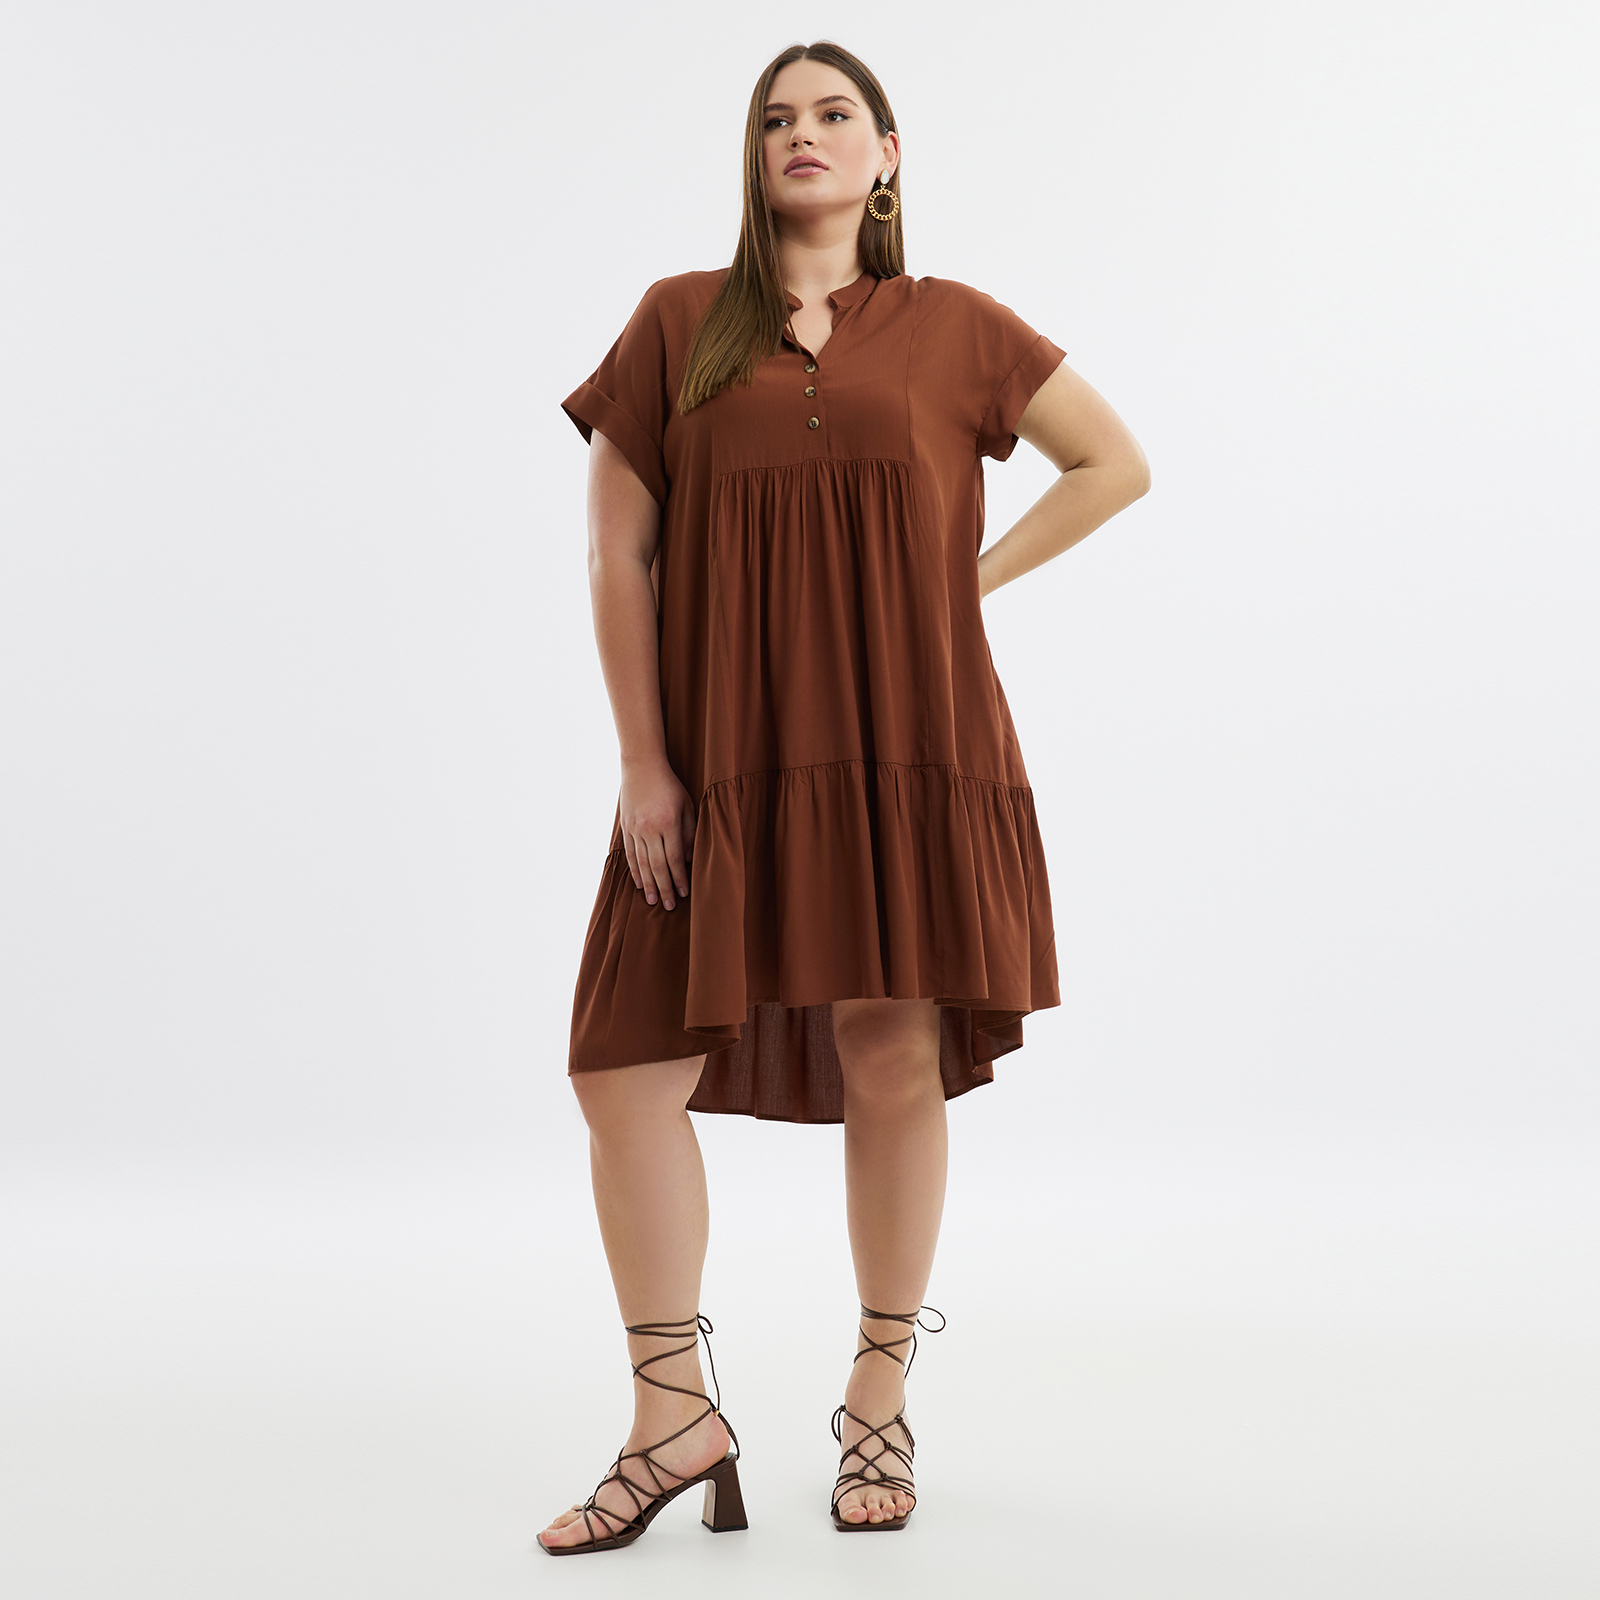 Φόρεμα βισκόζη με βολάν 8101.7207-brown